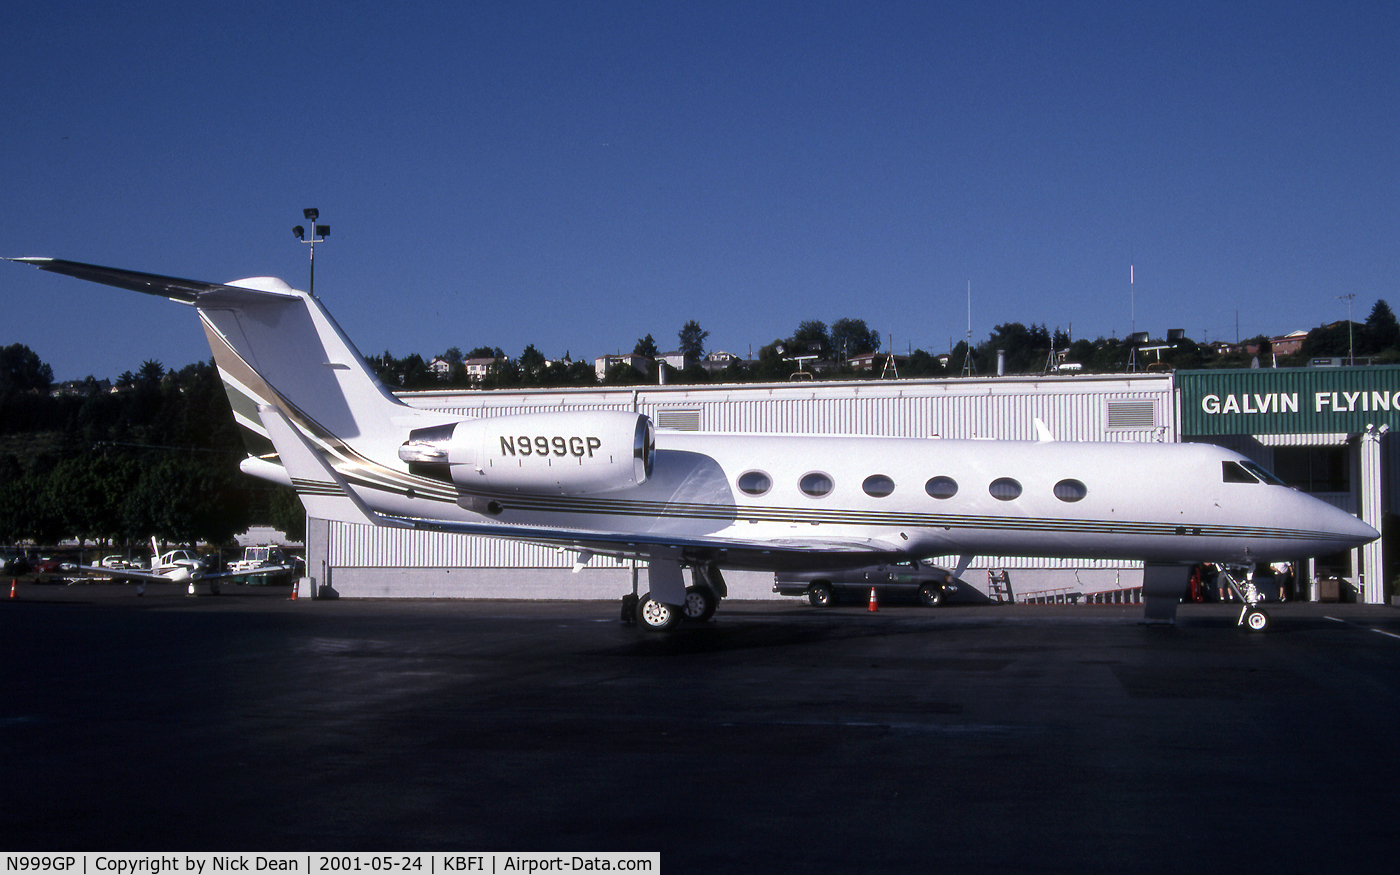 N999GP, 2000 Gulfstream Aerospace Gulfstream IVSP C/N 1422, KBFI